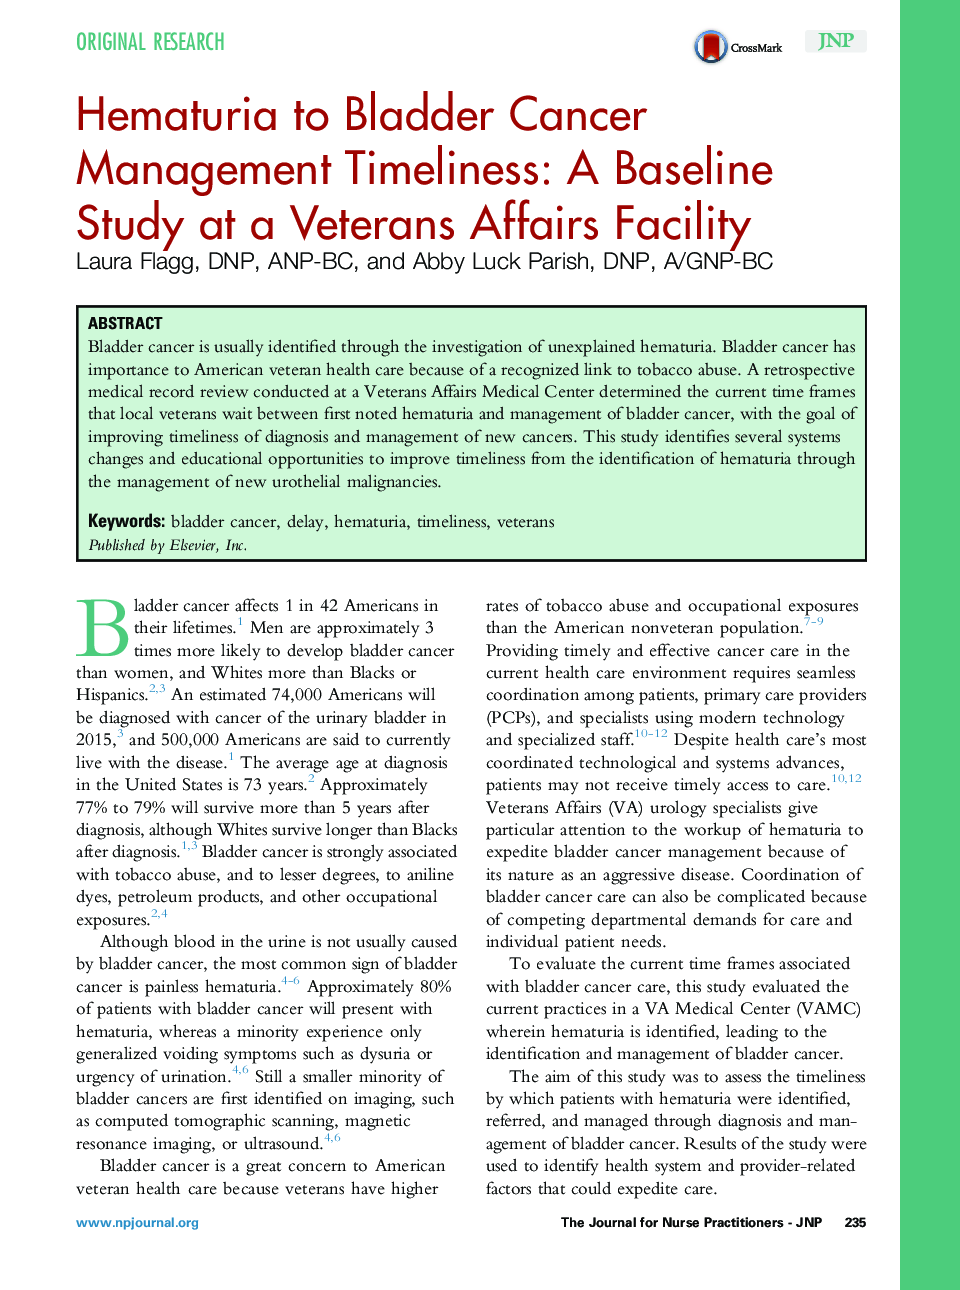 هماتوریوم برای بهنگام بودن مدیریت سرطان مثانه: یک مطالعه پایه در امور سربازان بازنشسته